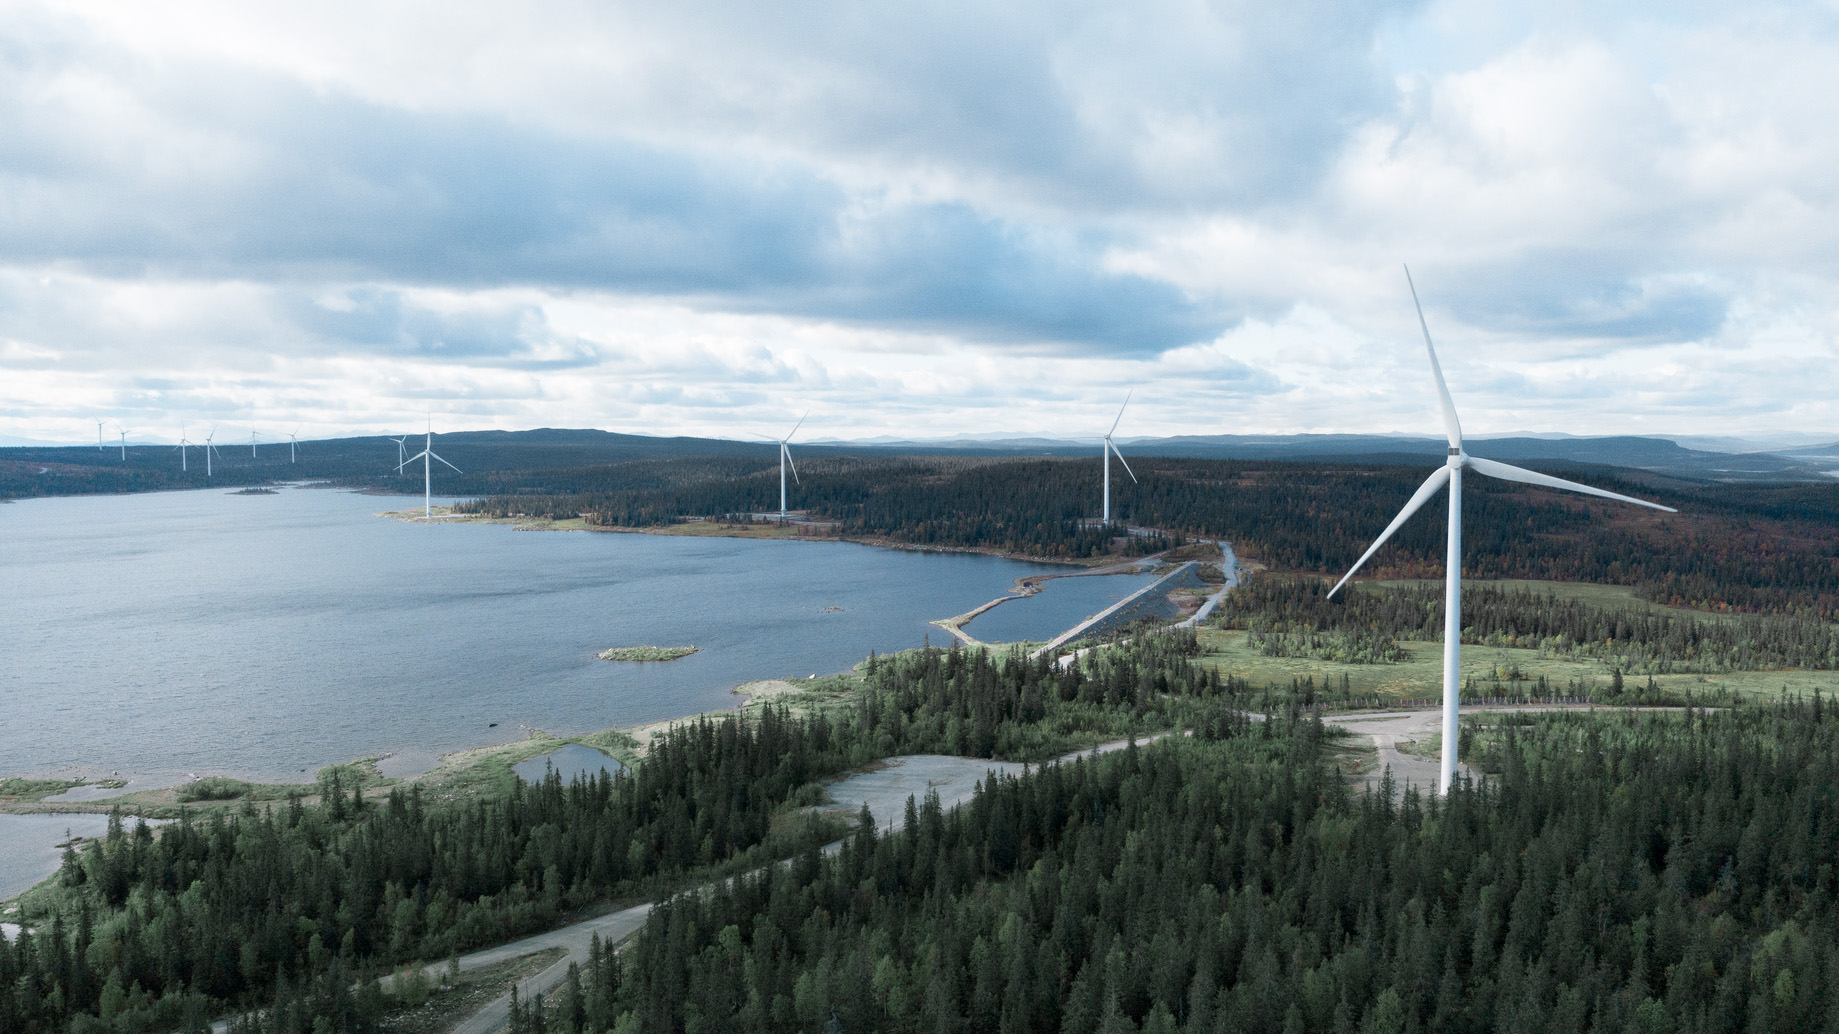 Onshore-Windpark am Ufer des Sees Juktan in Schweden